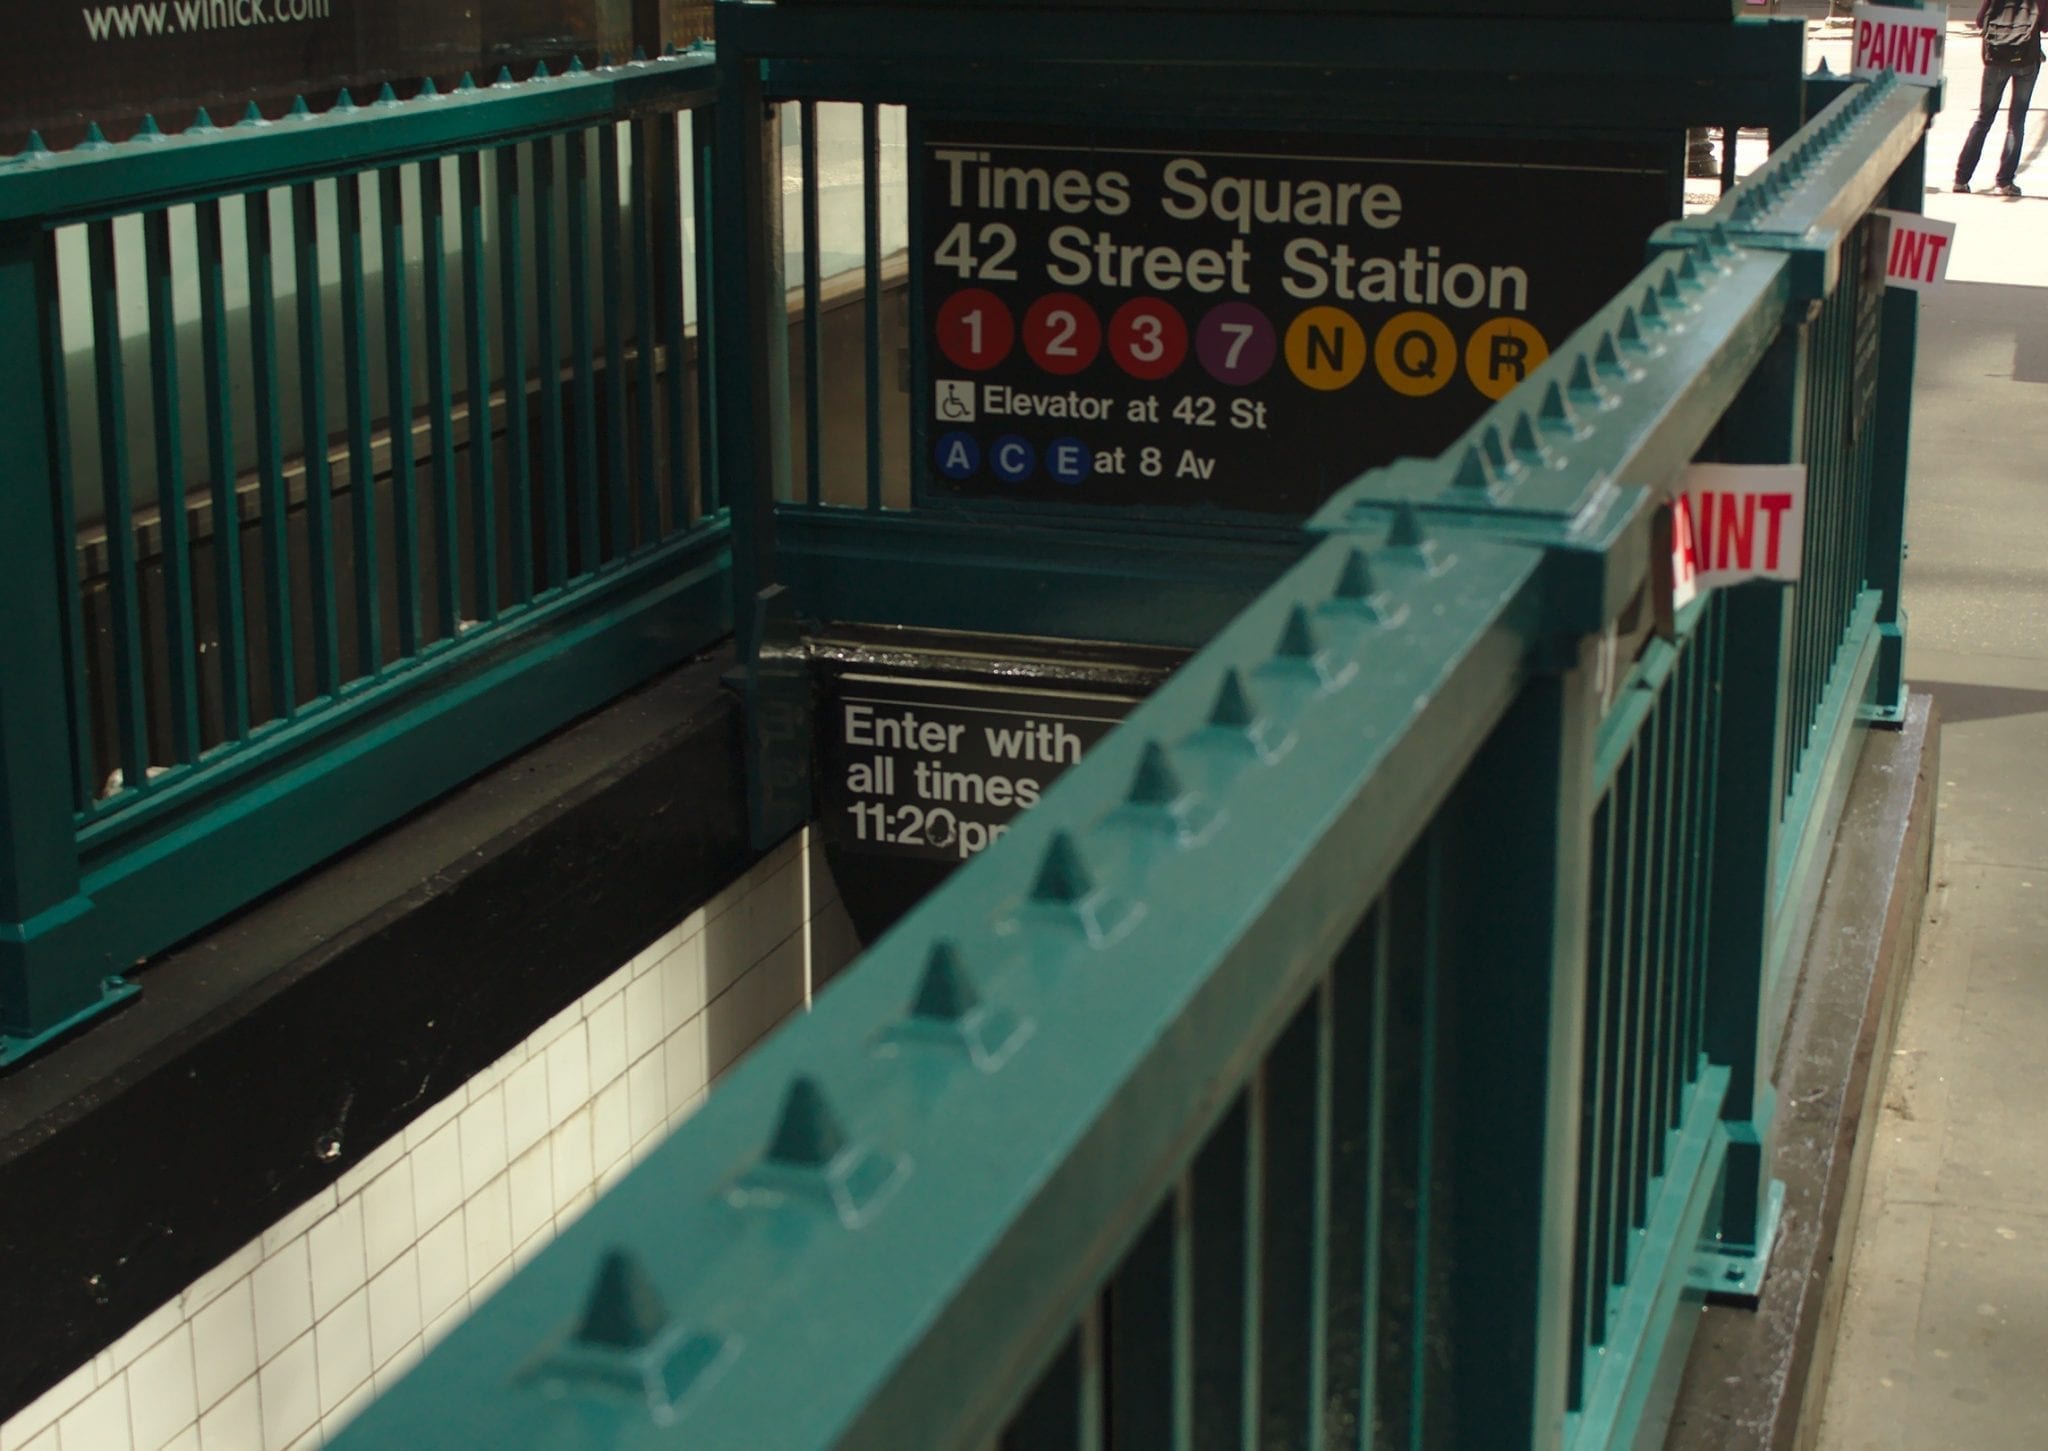 Example of subway entrance; image courtesy Pxhere.com, CC0.